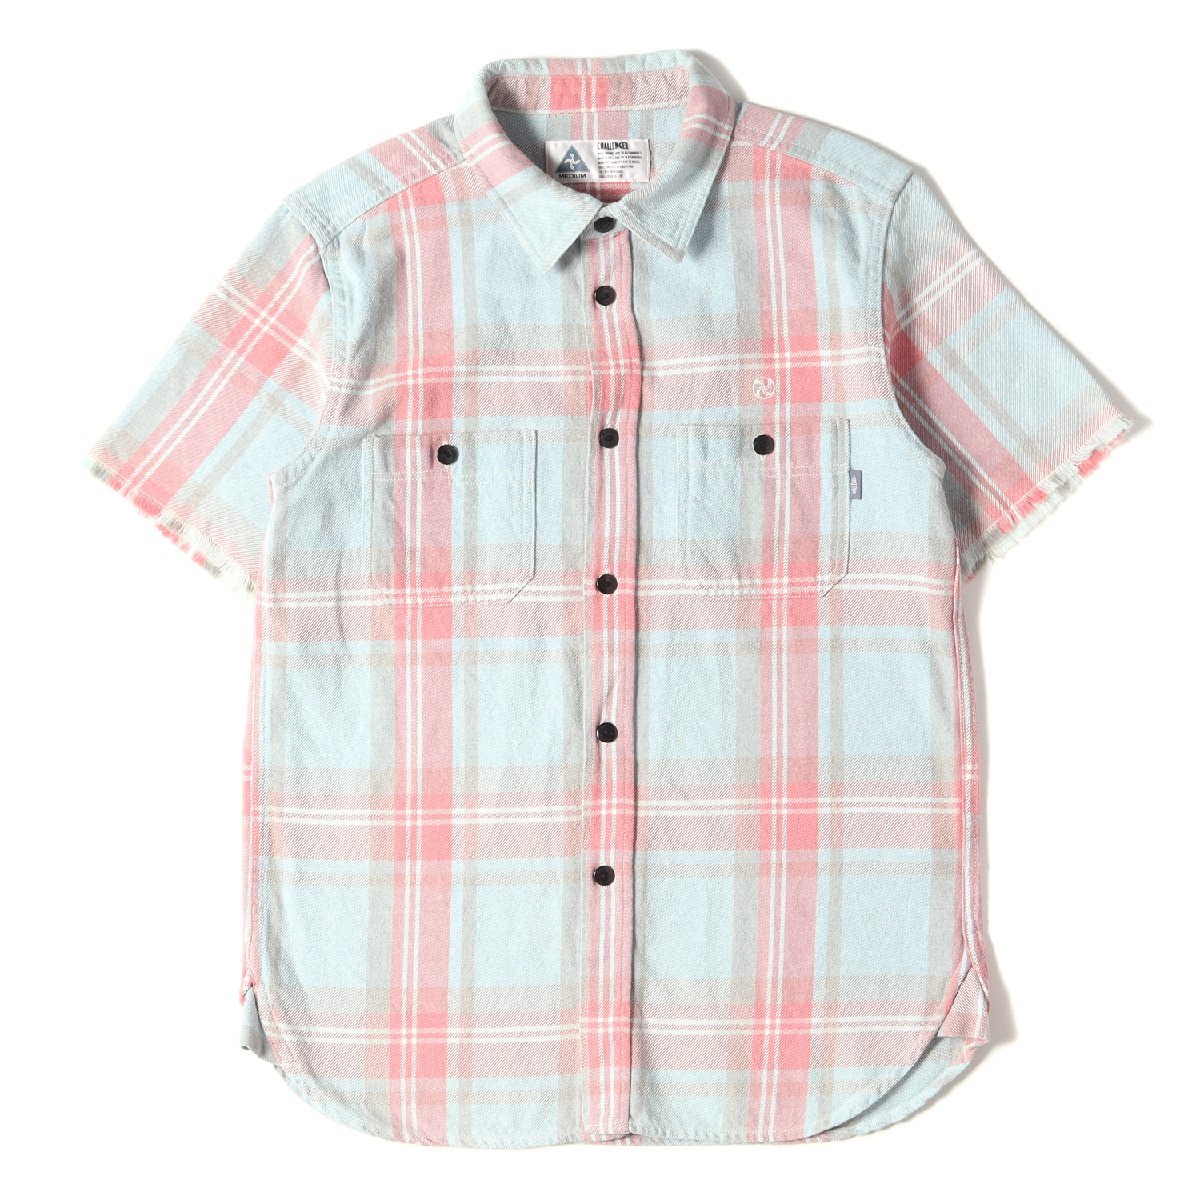 美品 CHALLENGER チャレンジャー シャツ サイズ:M 袖切りっぱなし チェック ヘビー ネルシャツ ライトブルー ピンク トップス 半袖